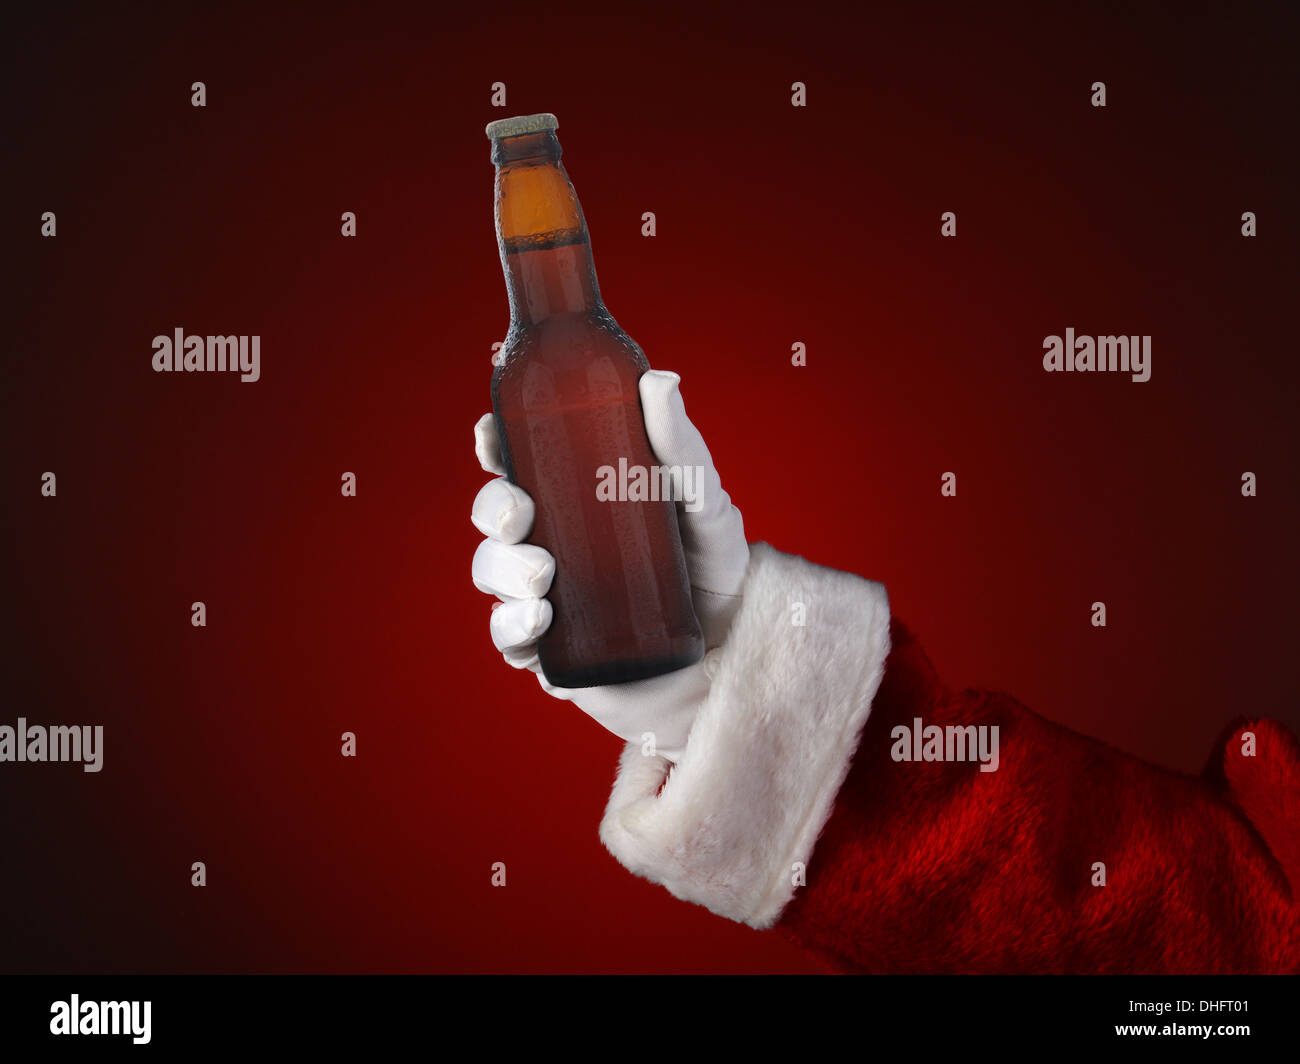 Nahaufnahme von Santa Claus mit einer Flasche Bier. Nur Hand- und Armbewegungen sind sichtbar. Stockfoto